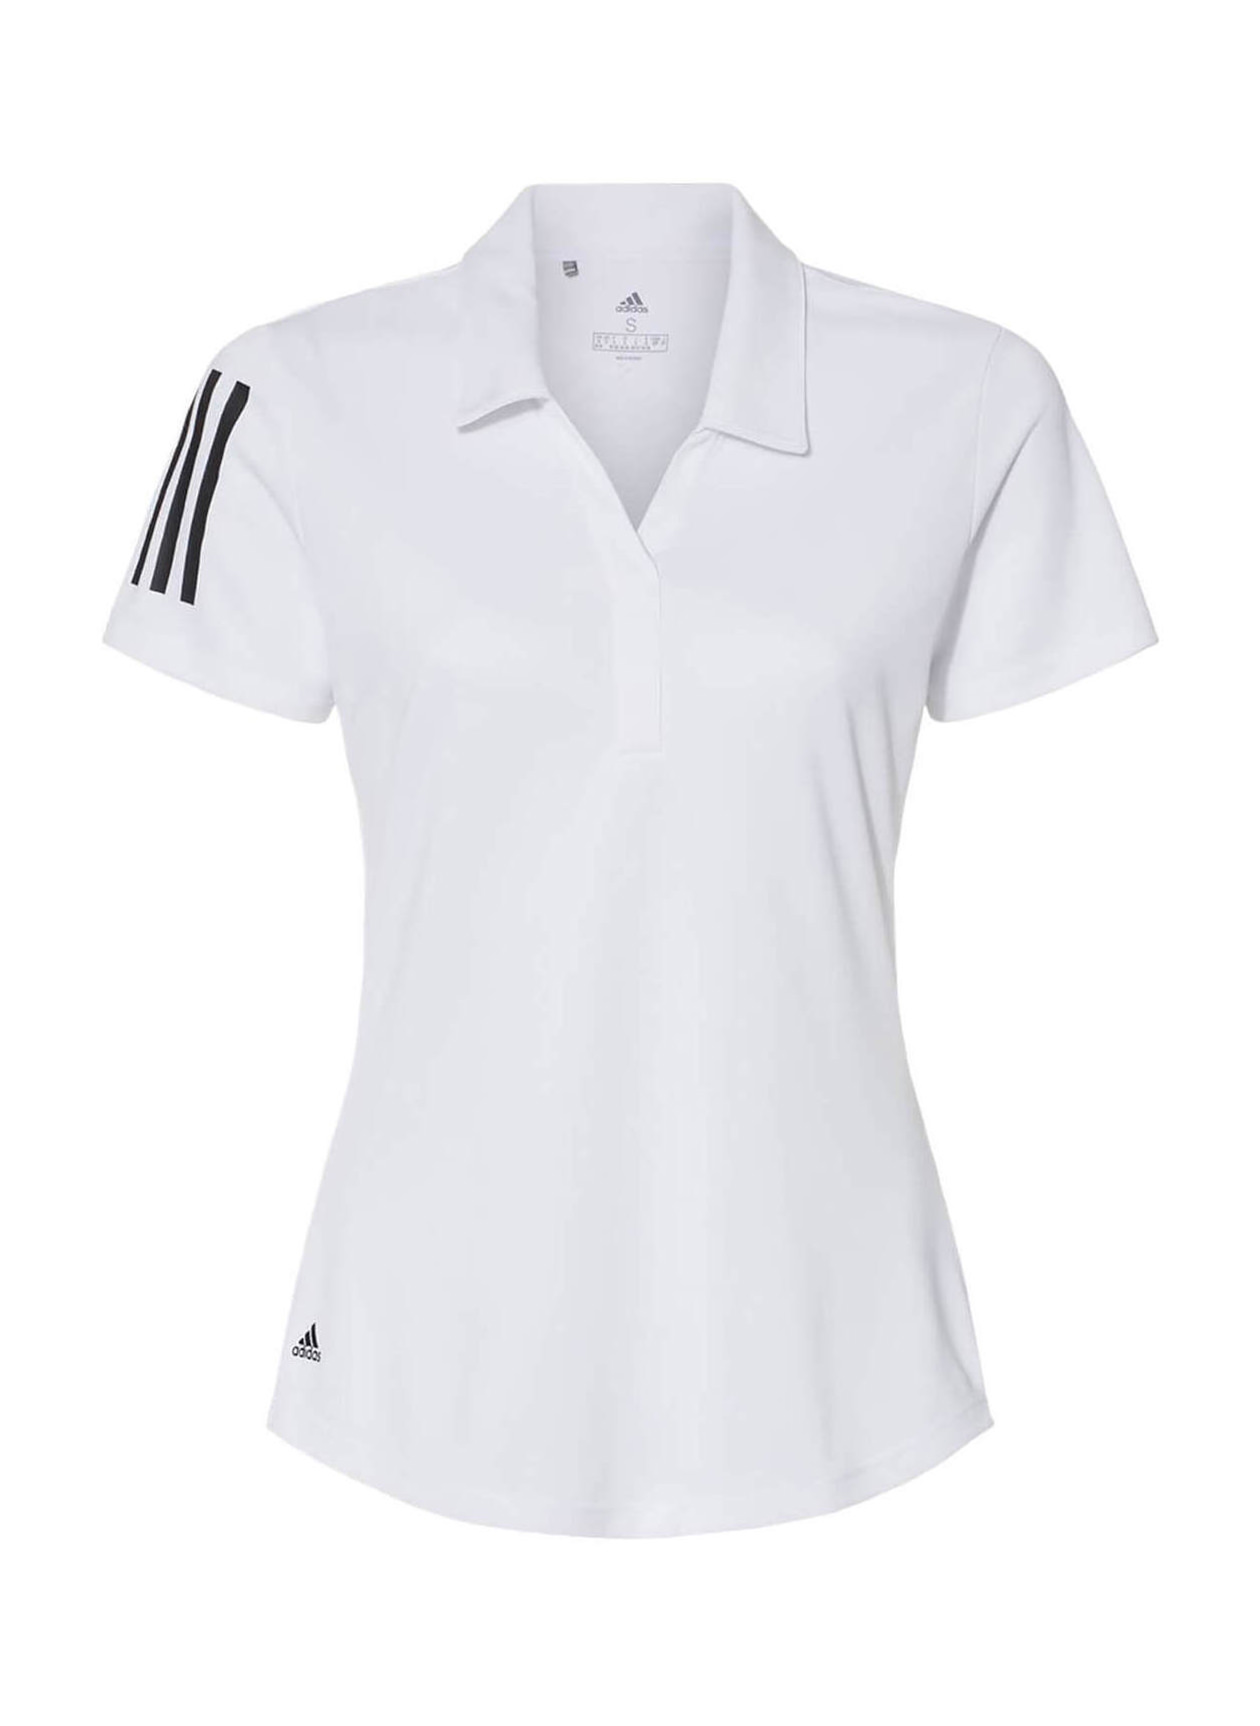 Adidas Women's White Floating 3-Stripes Polo